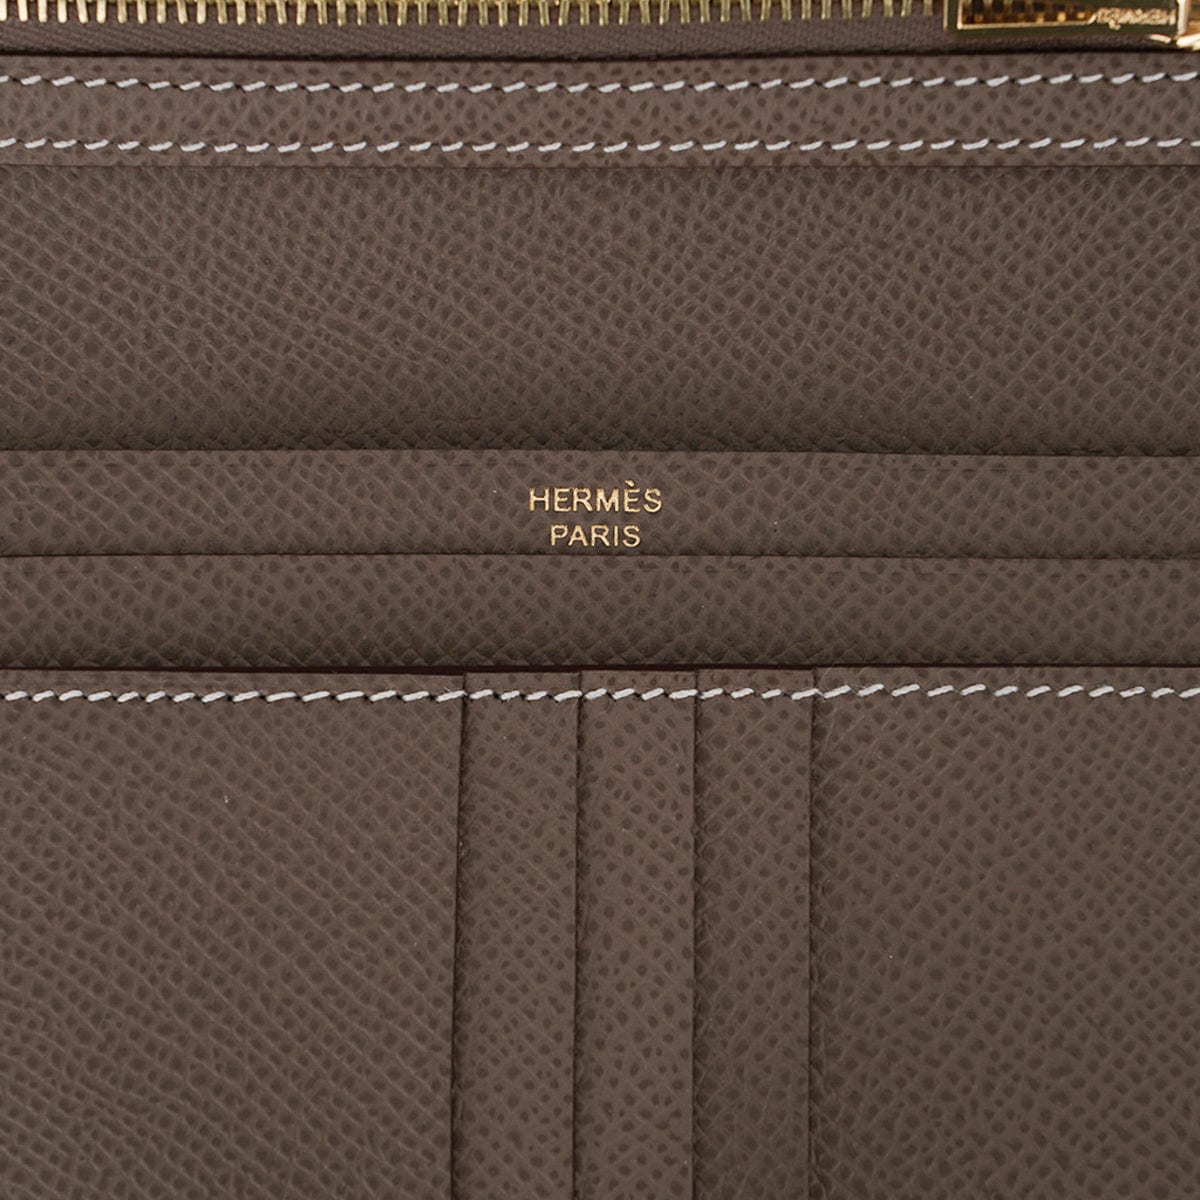 Hermes Bearn Mini wallet Blue indigo Epsom leather Gold hardware